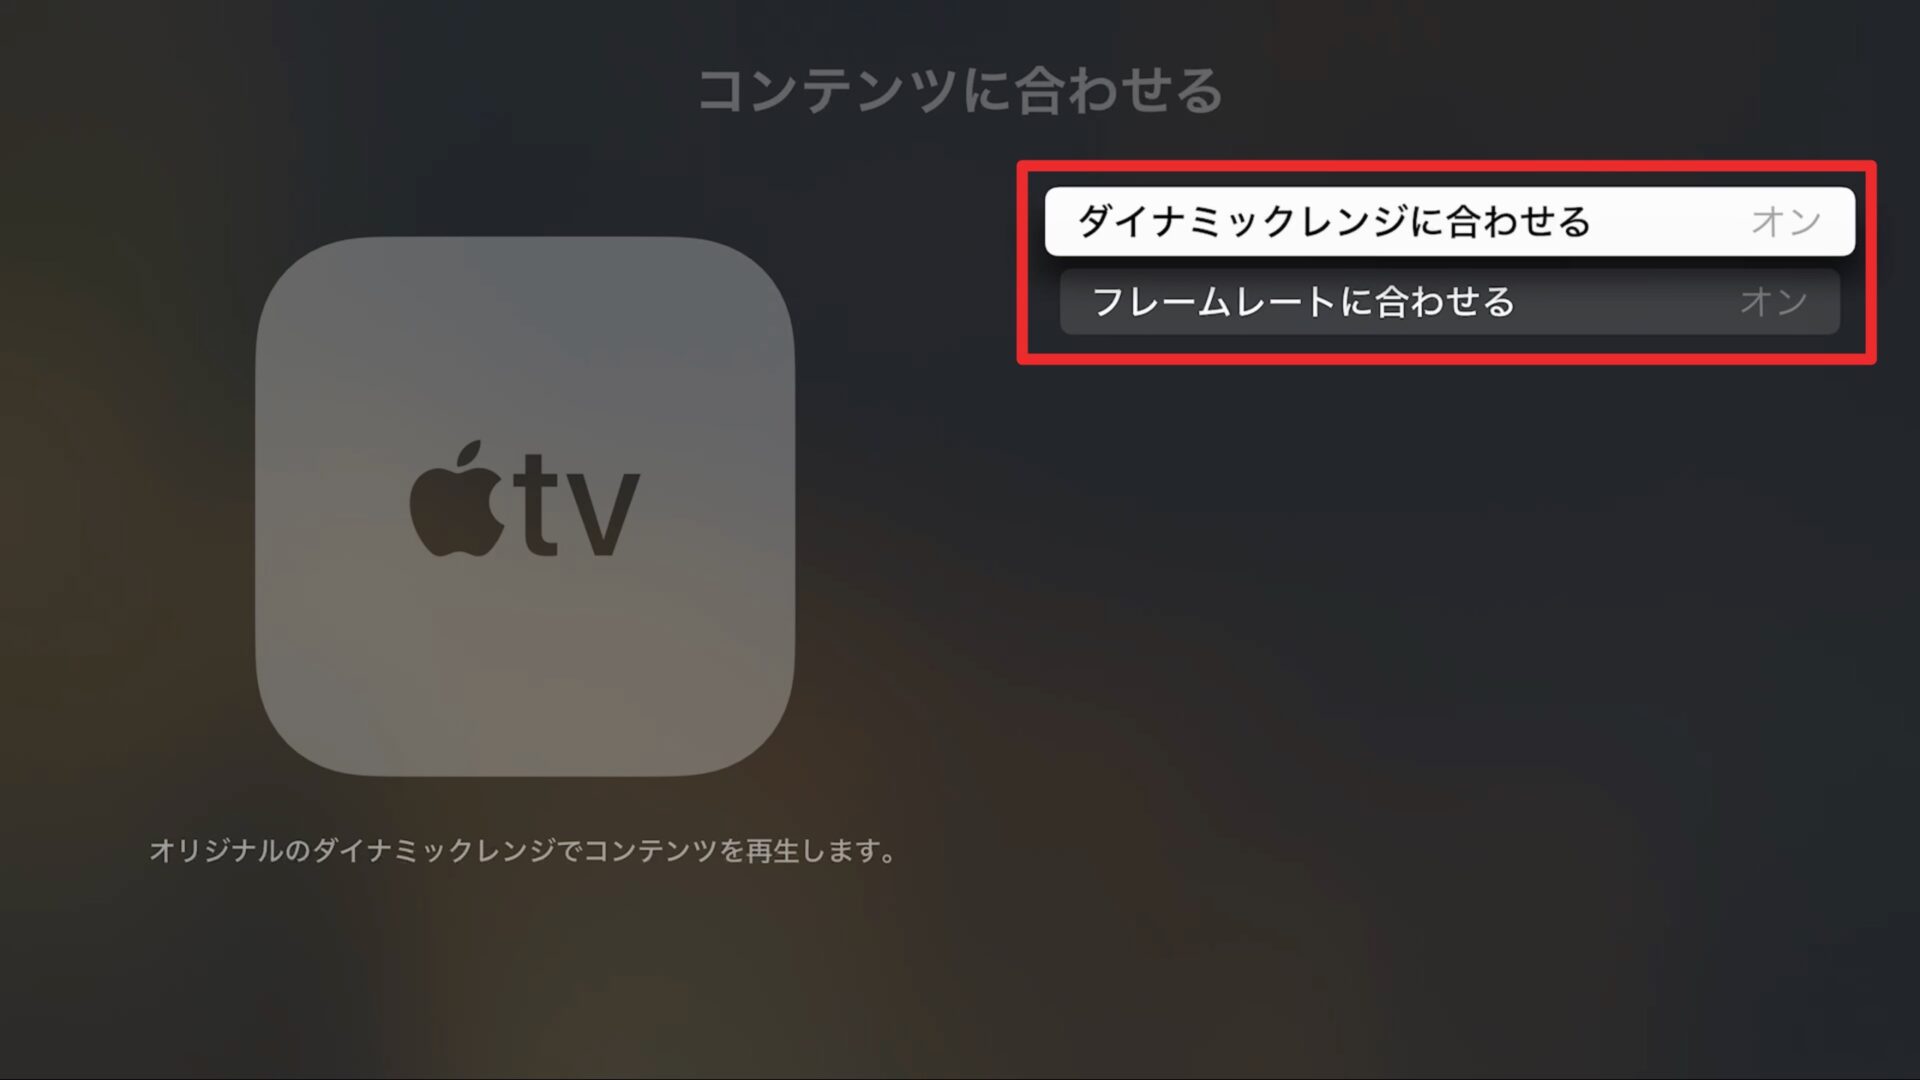 スペシャル特価 Apple TV HD 第4世代 ミラーリング YouTube動画鑑賞HDMI付 その他